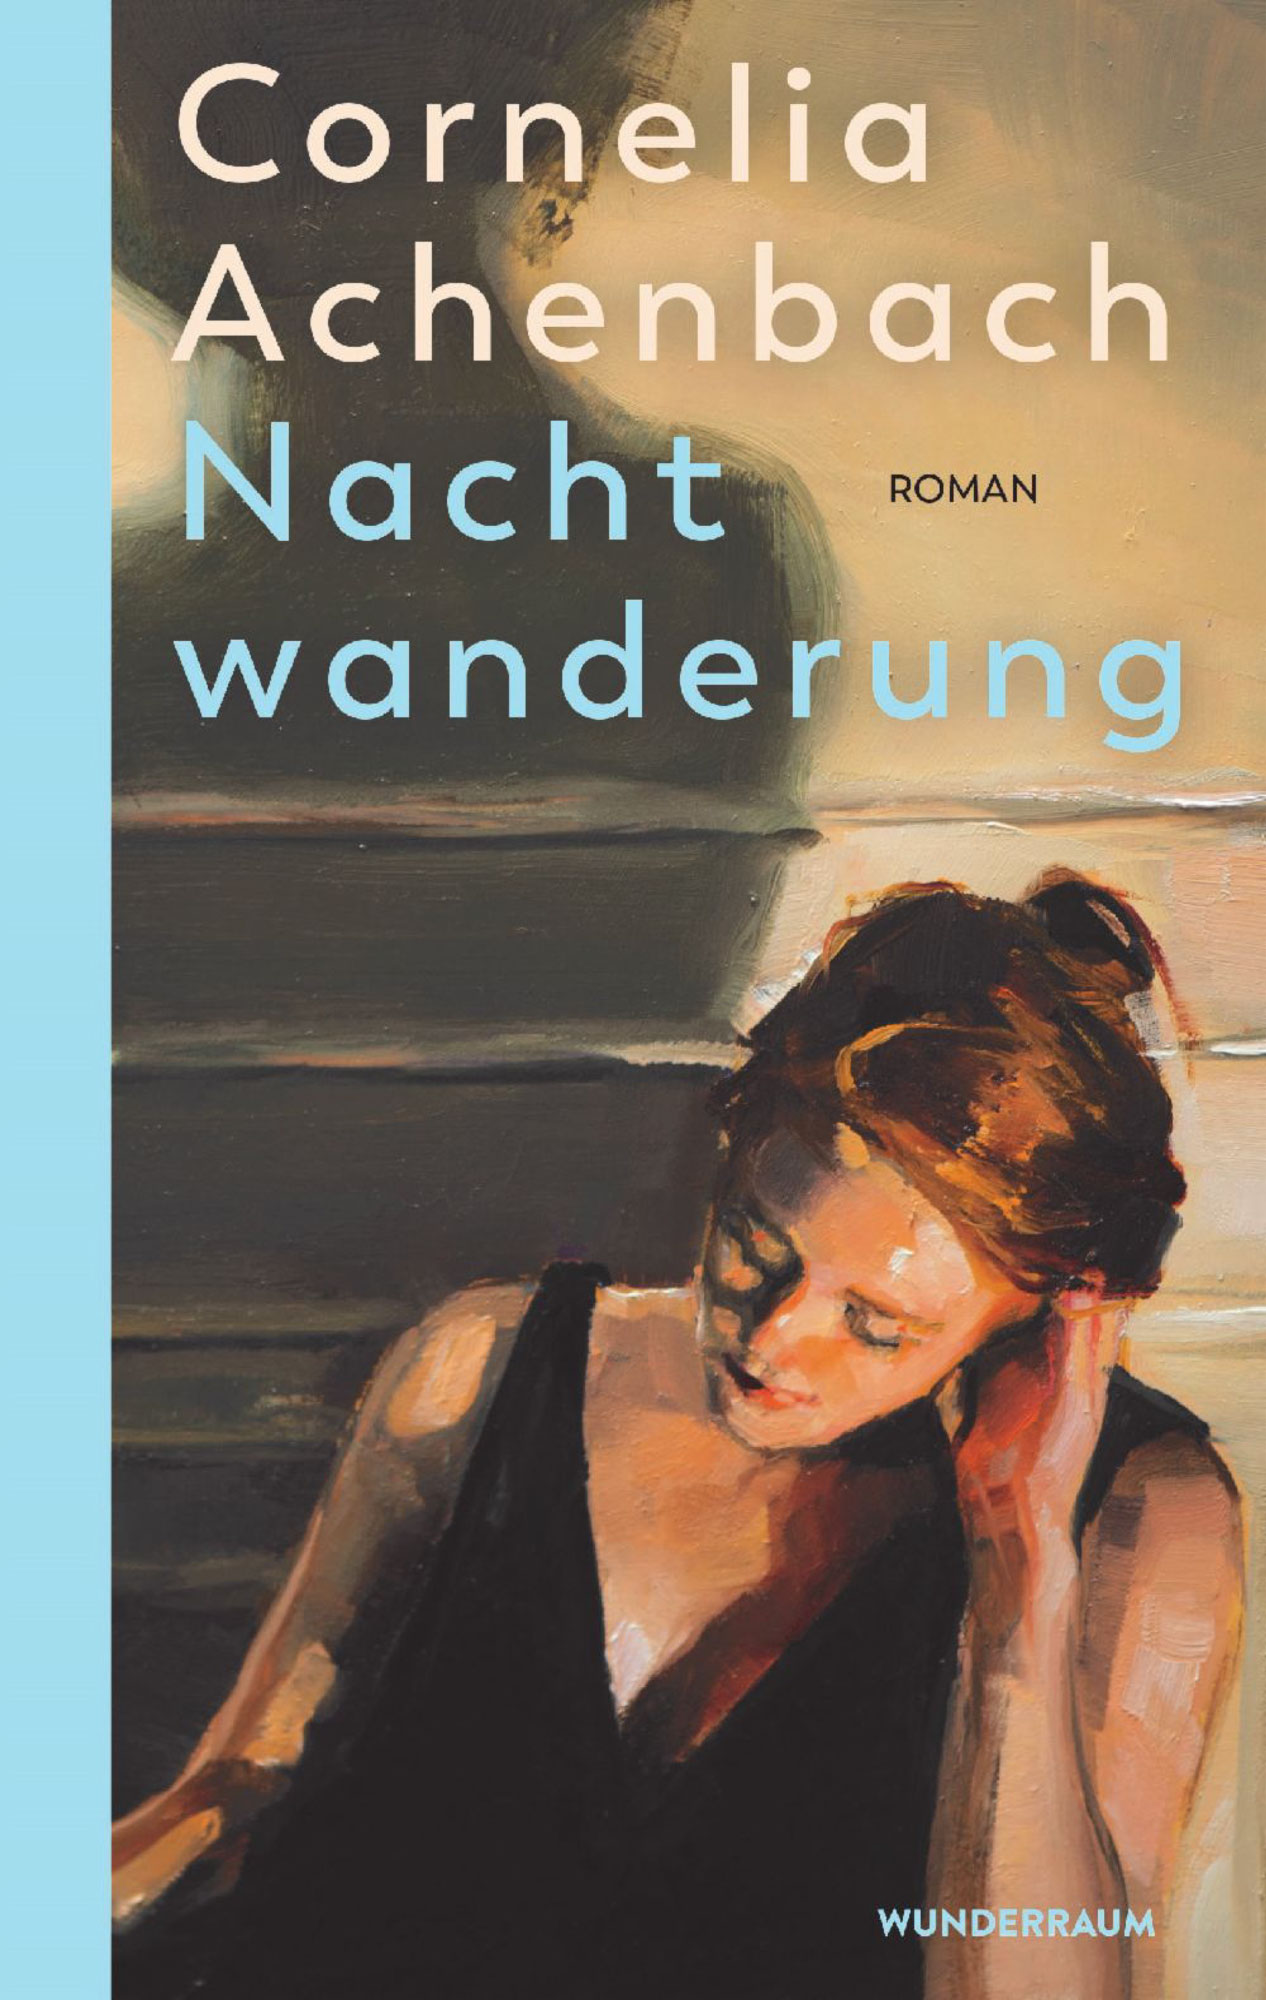 Cornelia Achenbach - Buch "Nachwanderung"